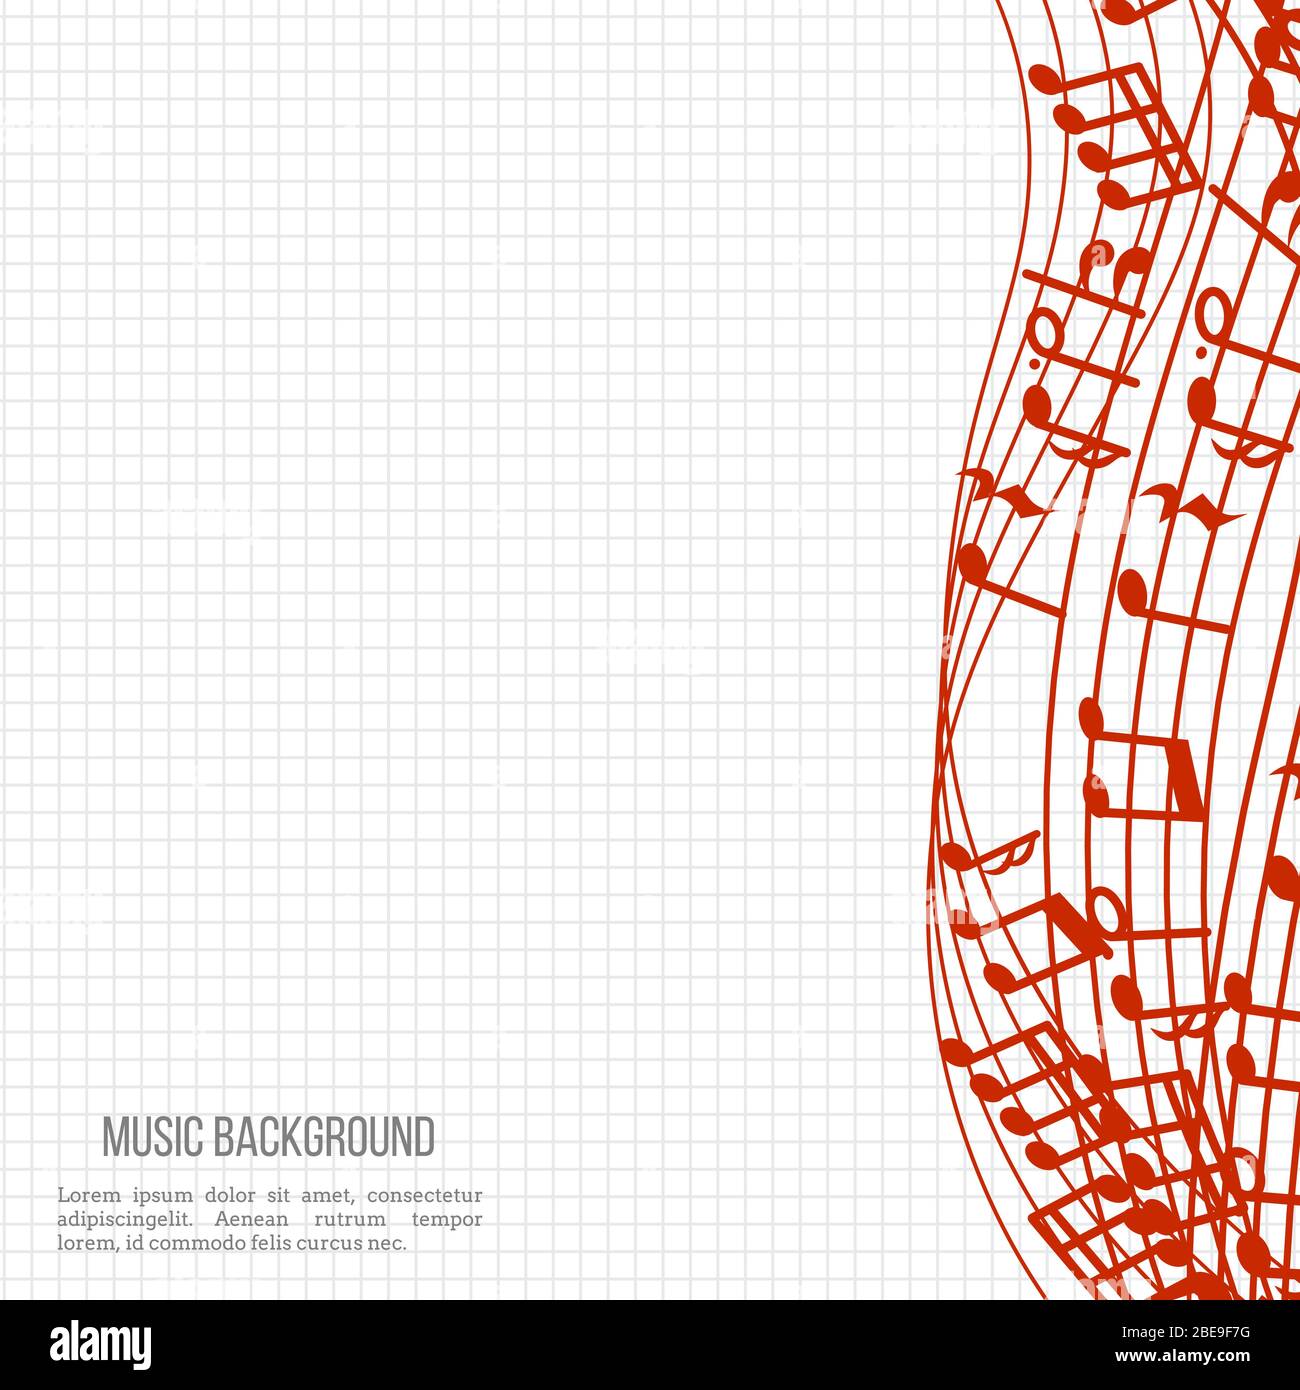 Fond musical pour ordinateur portable avec notes et courbes de musique rouges. Illustration vectorielle Illustration de Vecteur